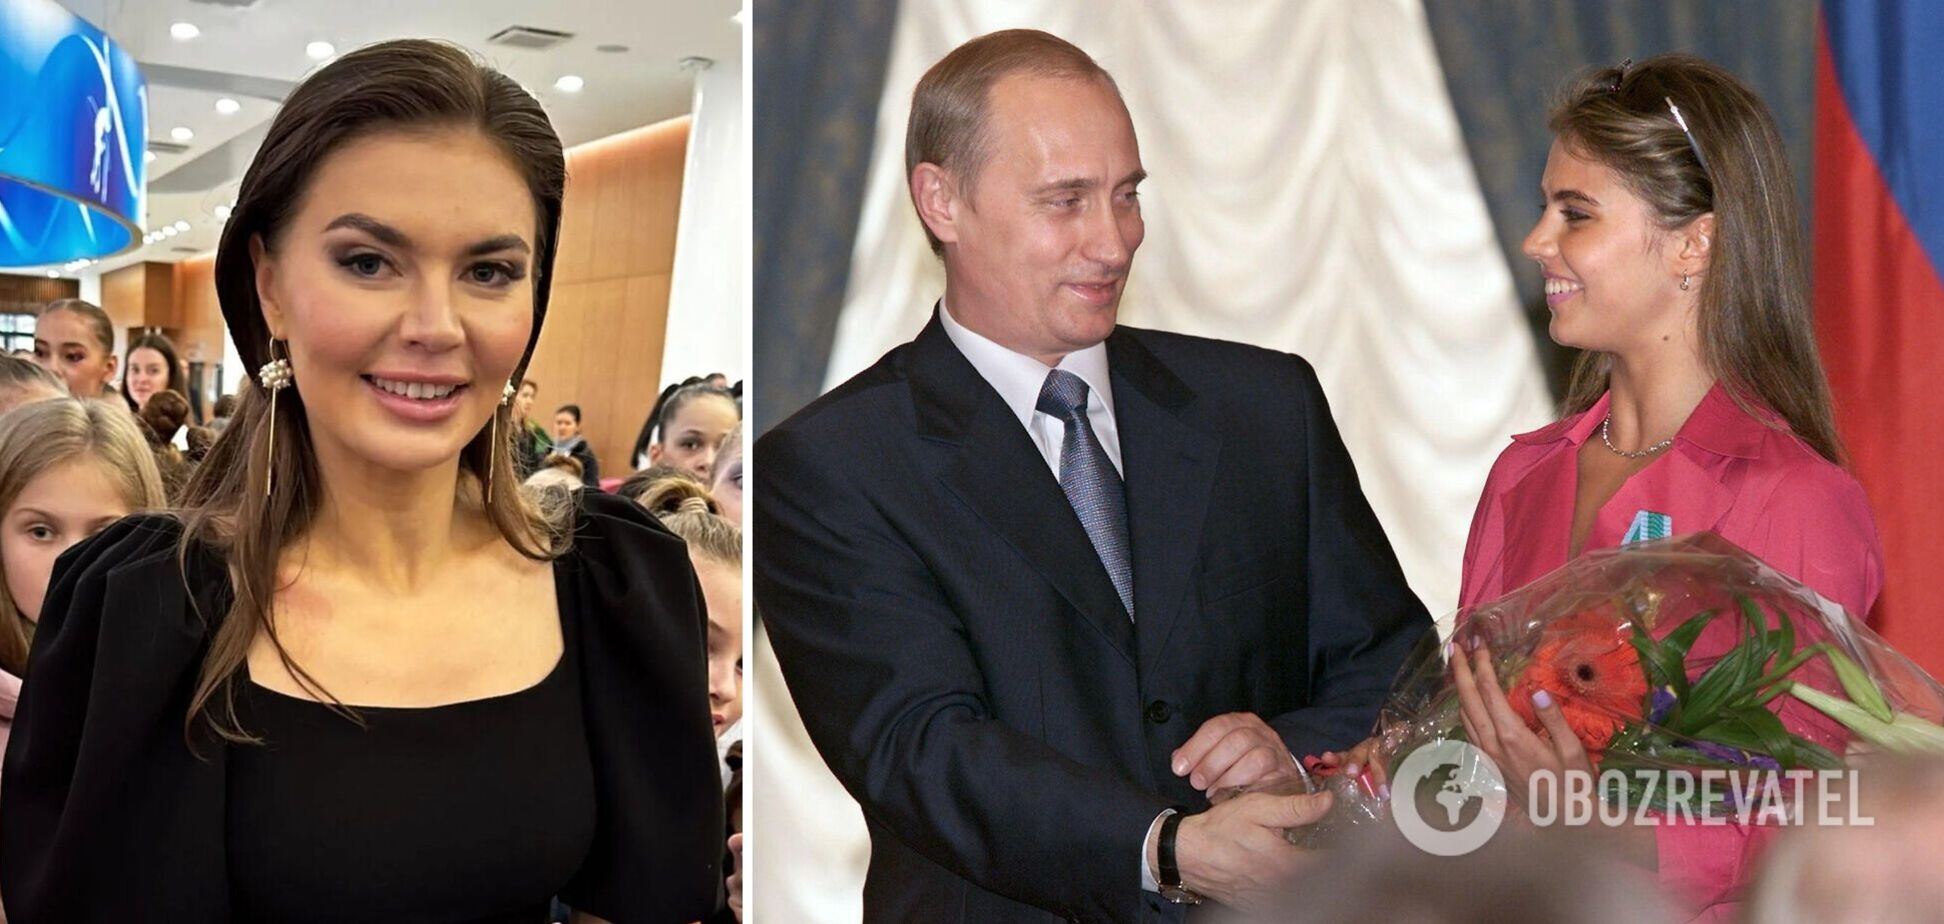 'Тайная любовница' Путина Кабаева засветилась с обручальным кольцом на безымянном пальце на мероприятии в честь самой себя